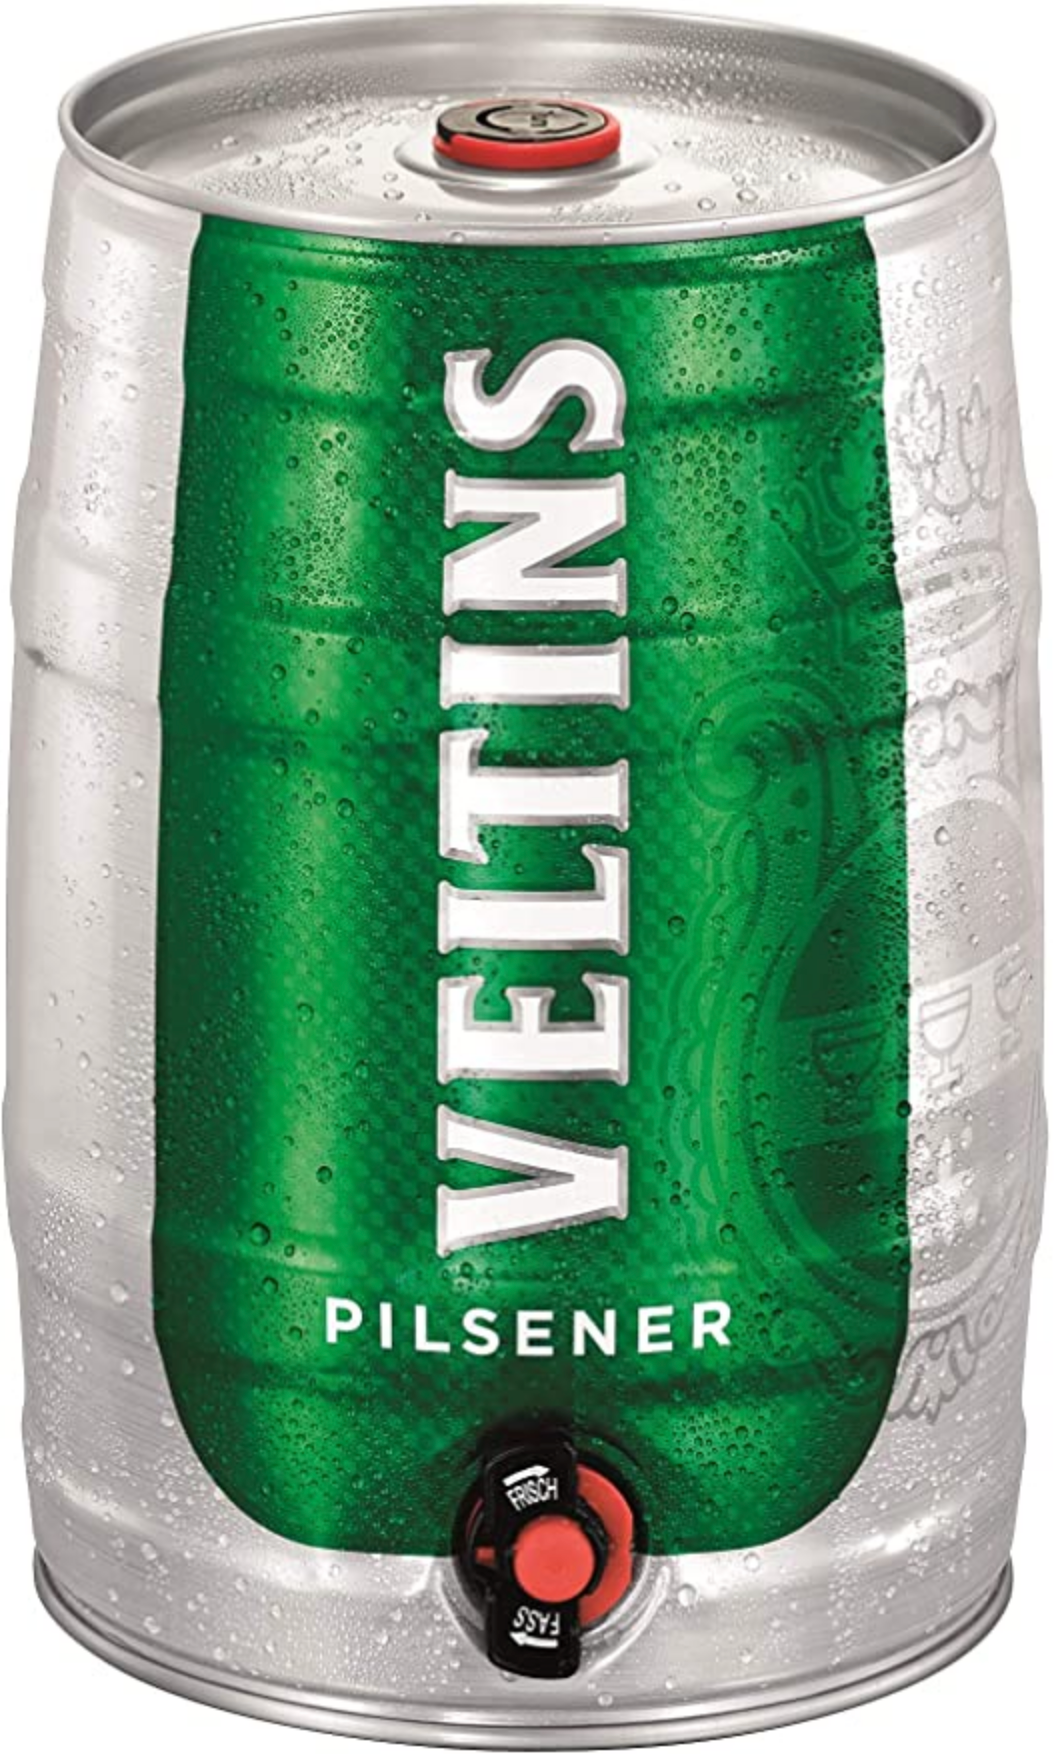 Vveltins - Pilsner 4.8% ABV 5 Ltr Keg